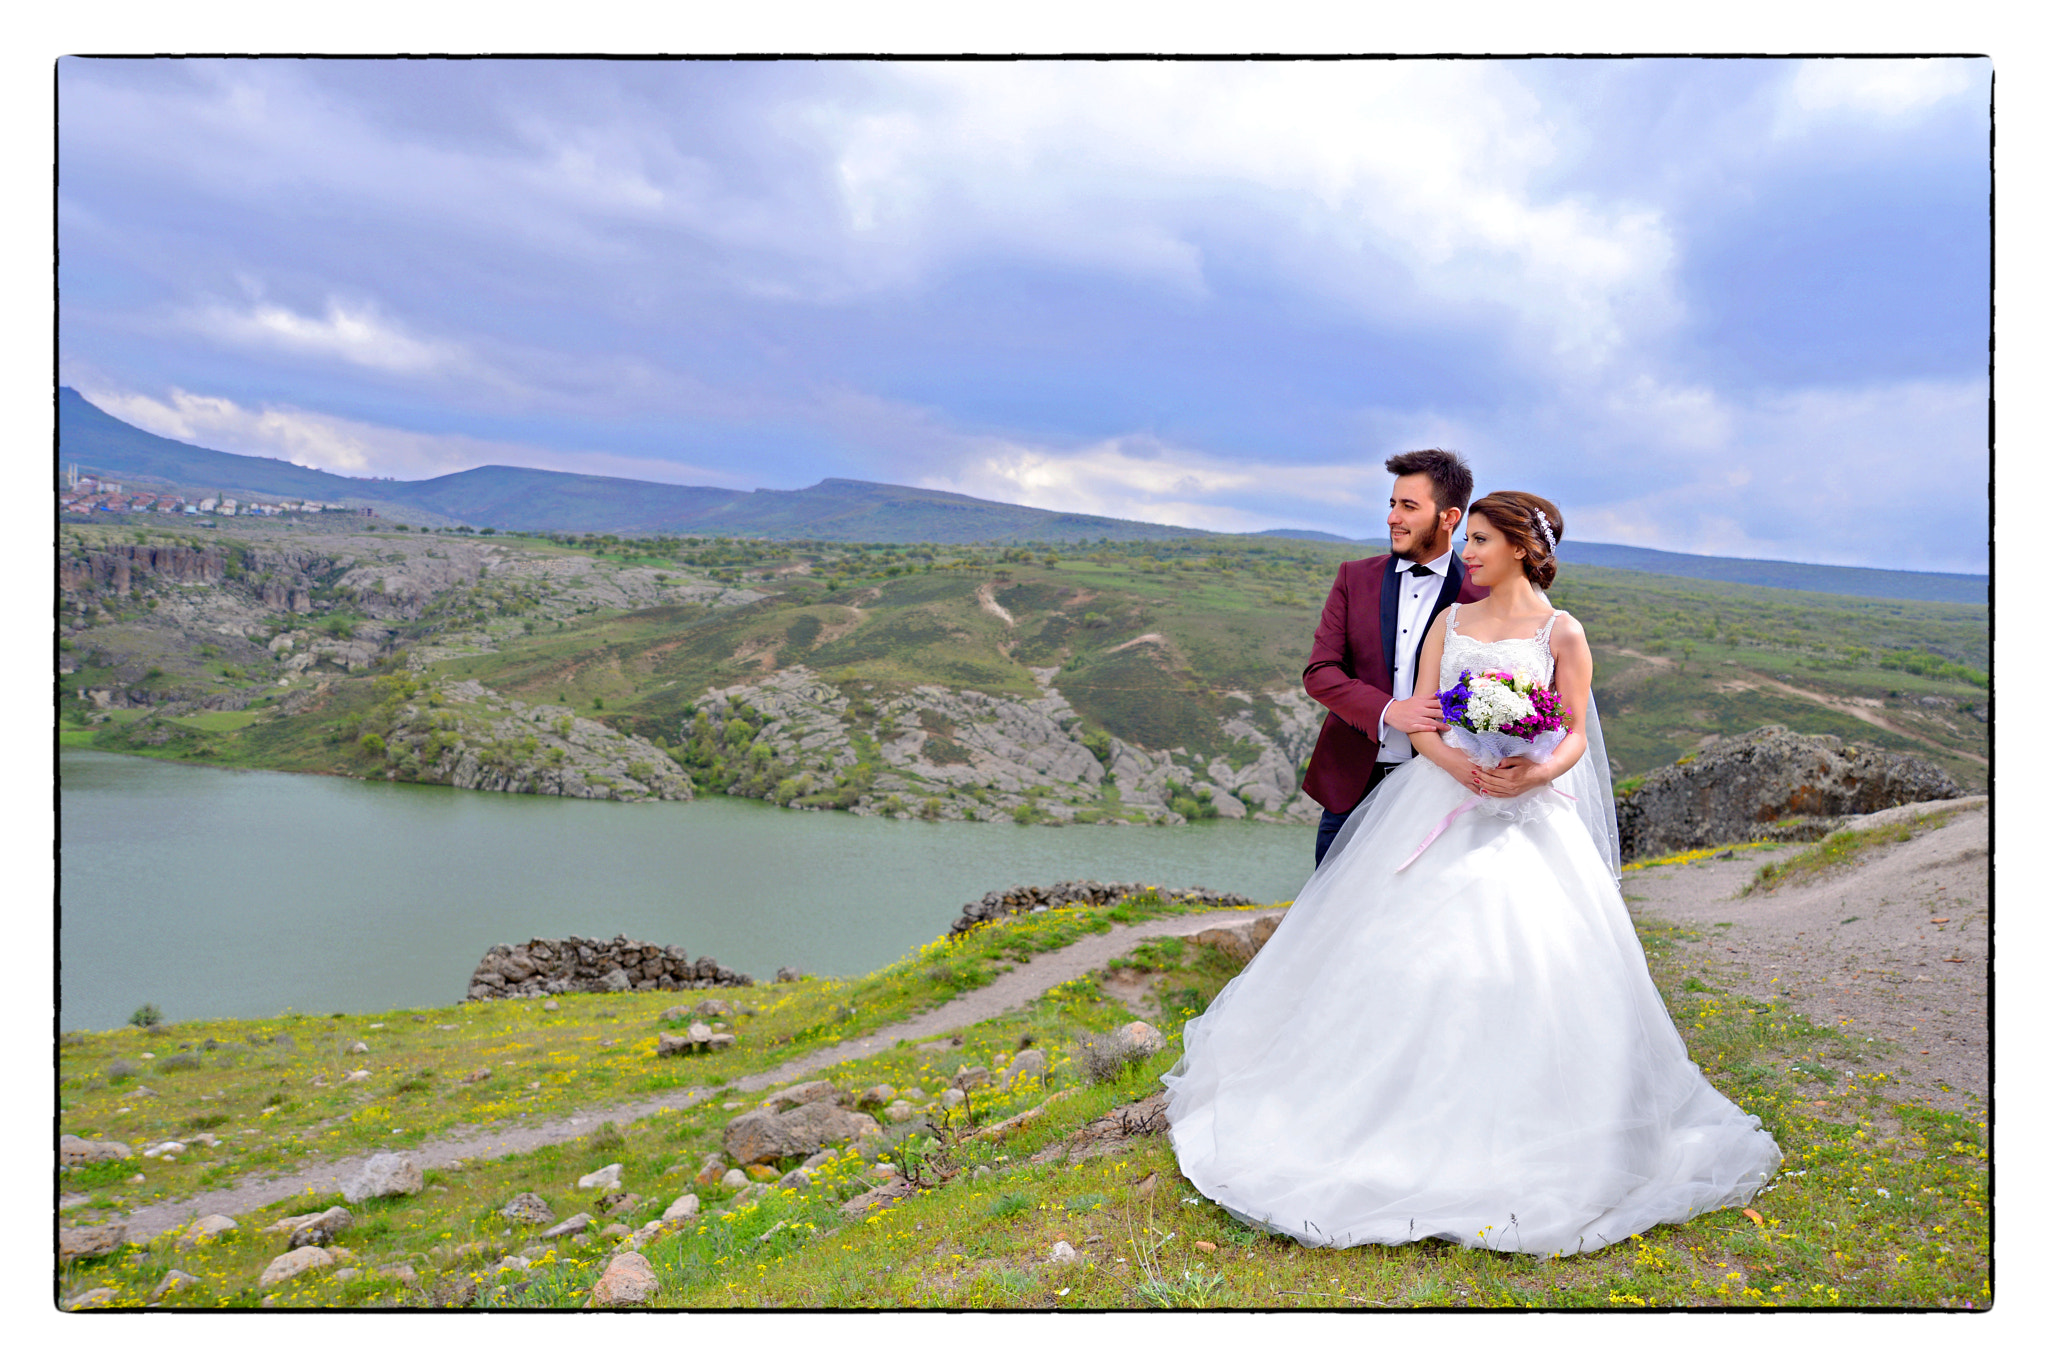 Nikon D800 + AF Zoom-Nikkor 35-80mm f/4-5.6D sample photo. Wedding photography